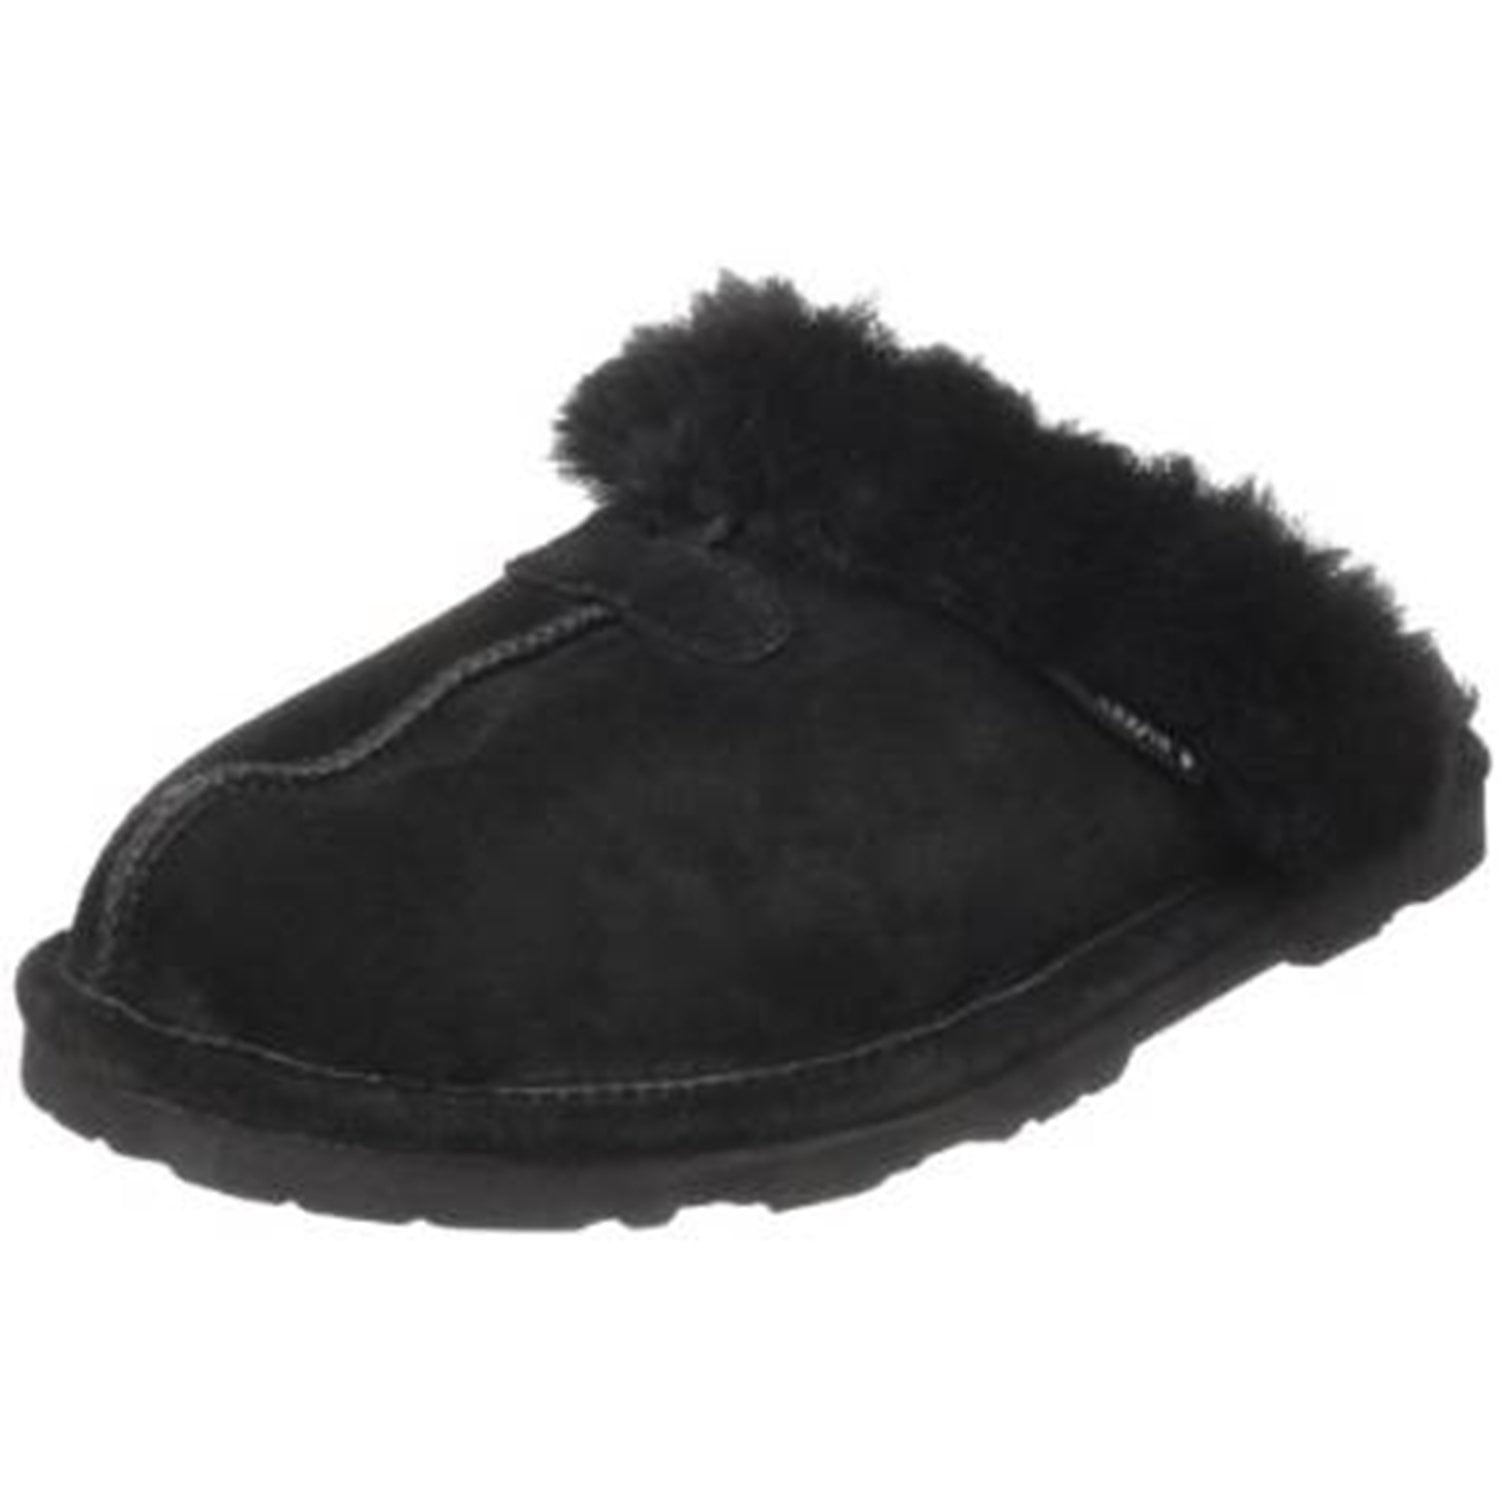 women's sheepskin slippers canada